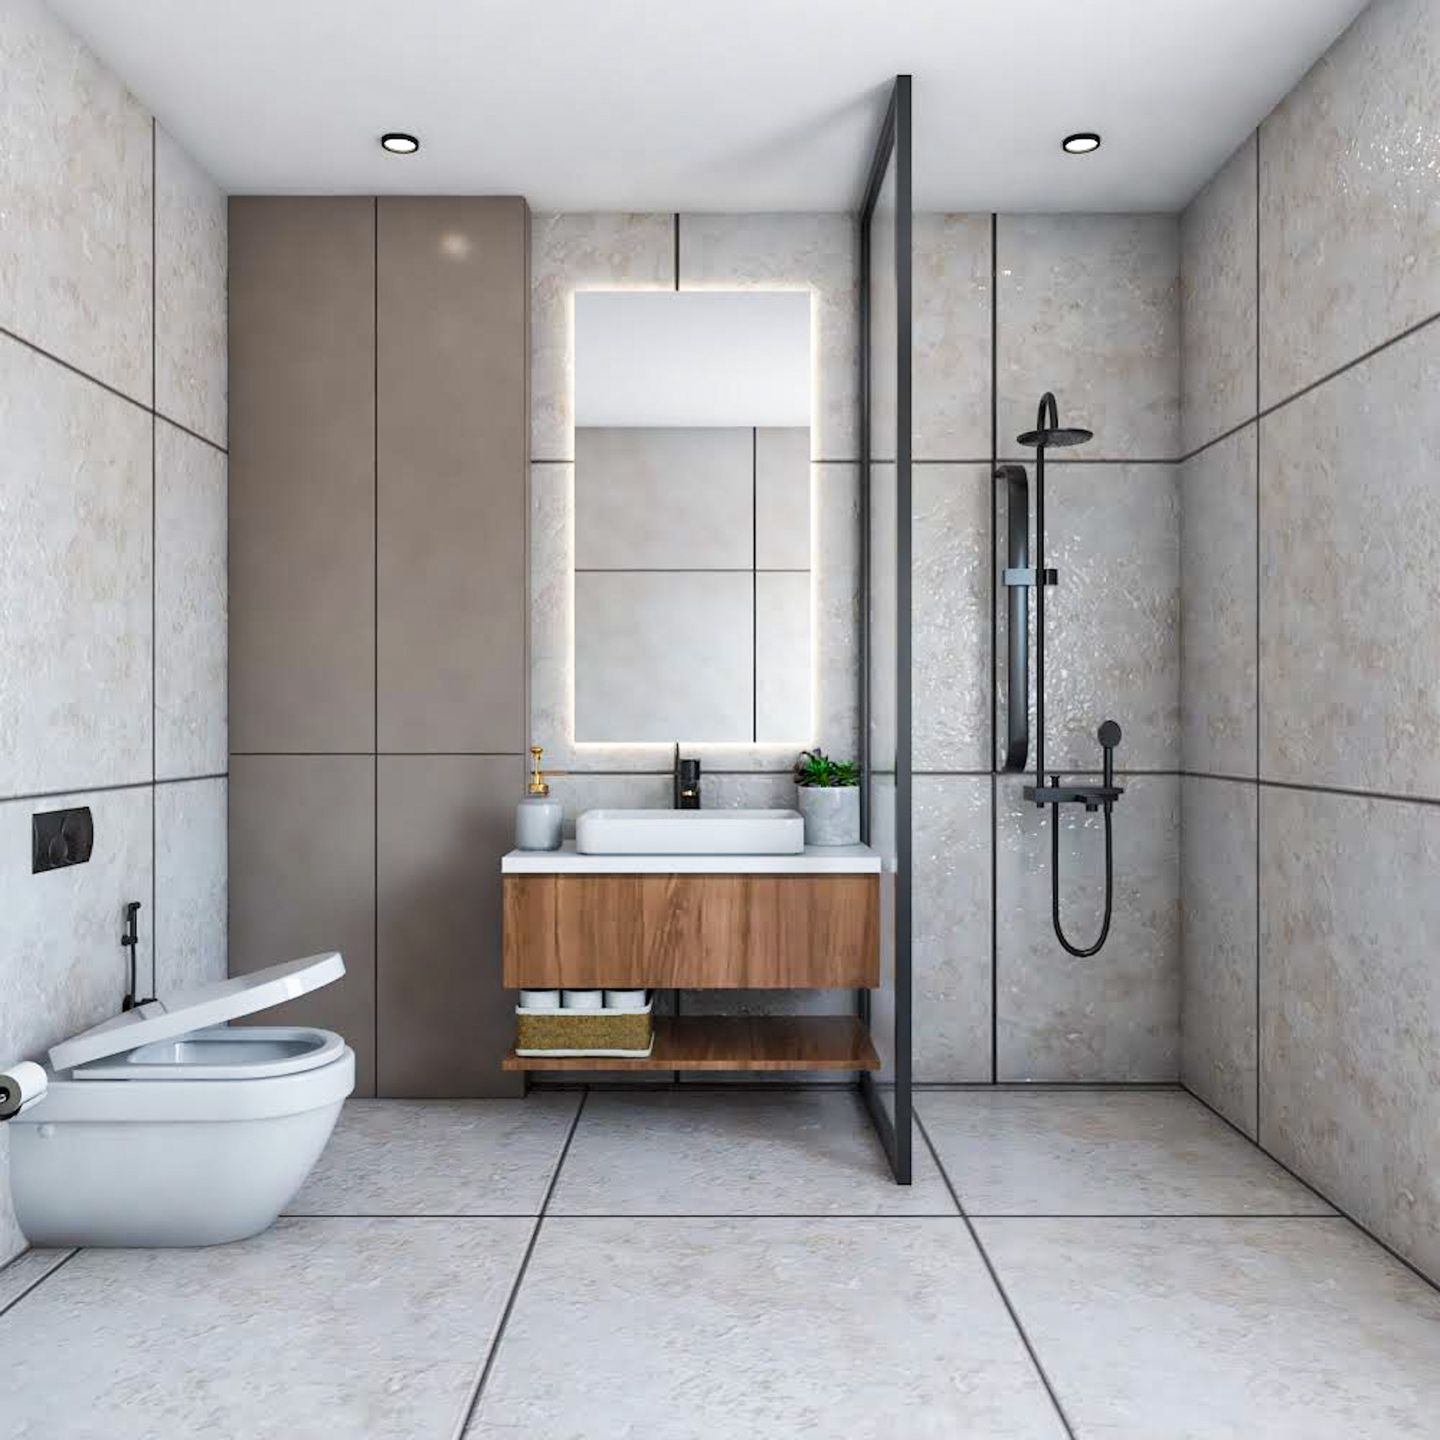 Cream Bathroom Design With Minimalistic Interiors - Livspace